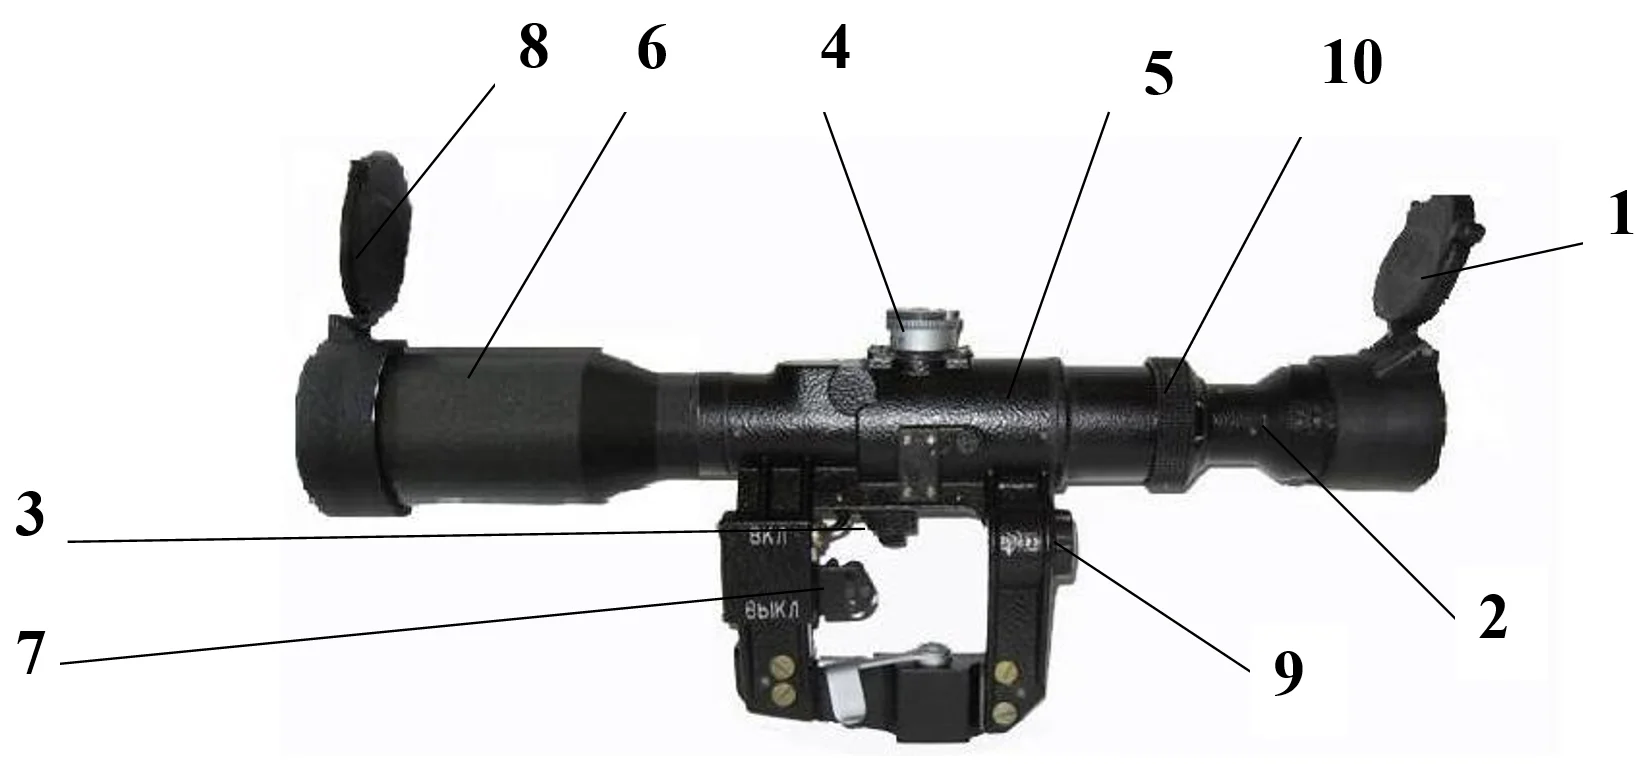 Aufbau eines POSP Zielfernrohres (Sniper Scope)